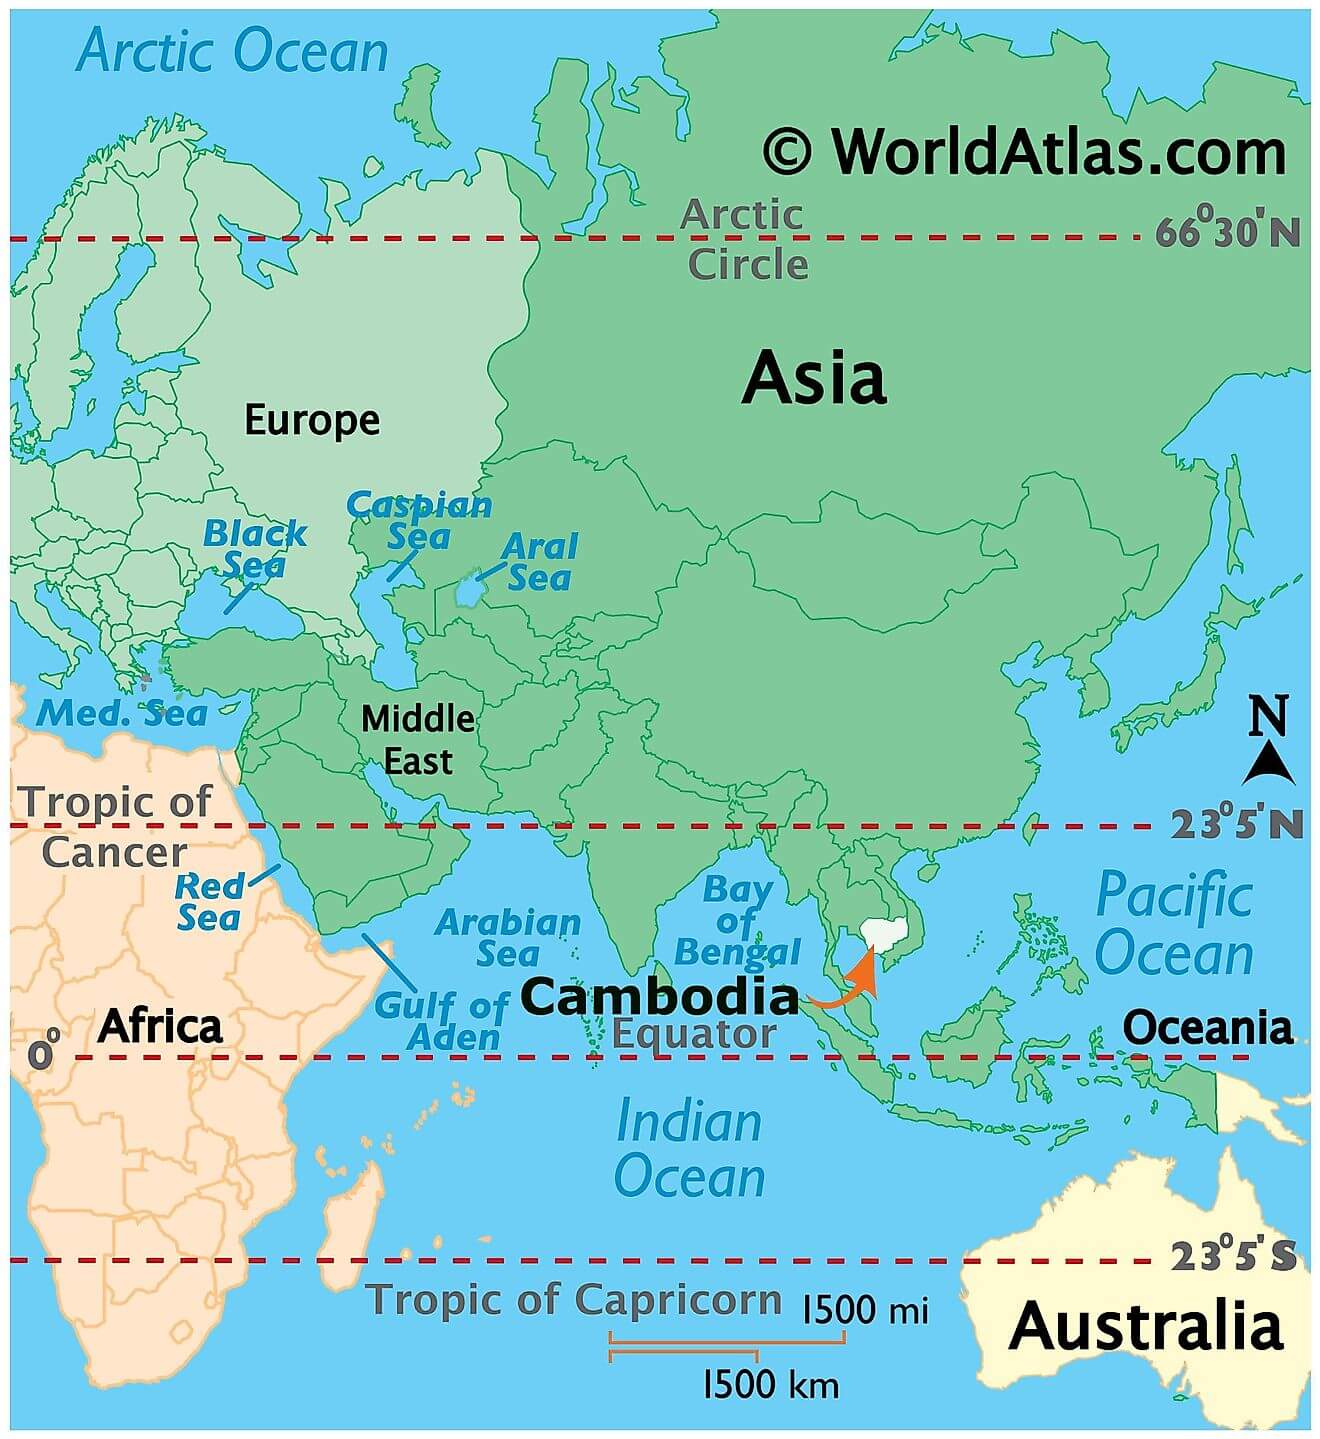 Where is Cambodia?